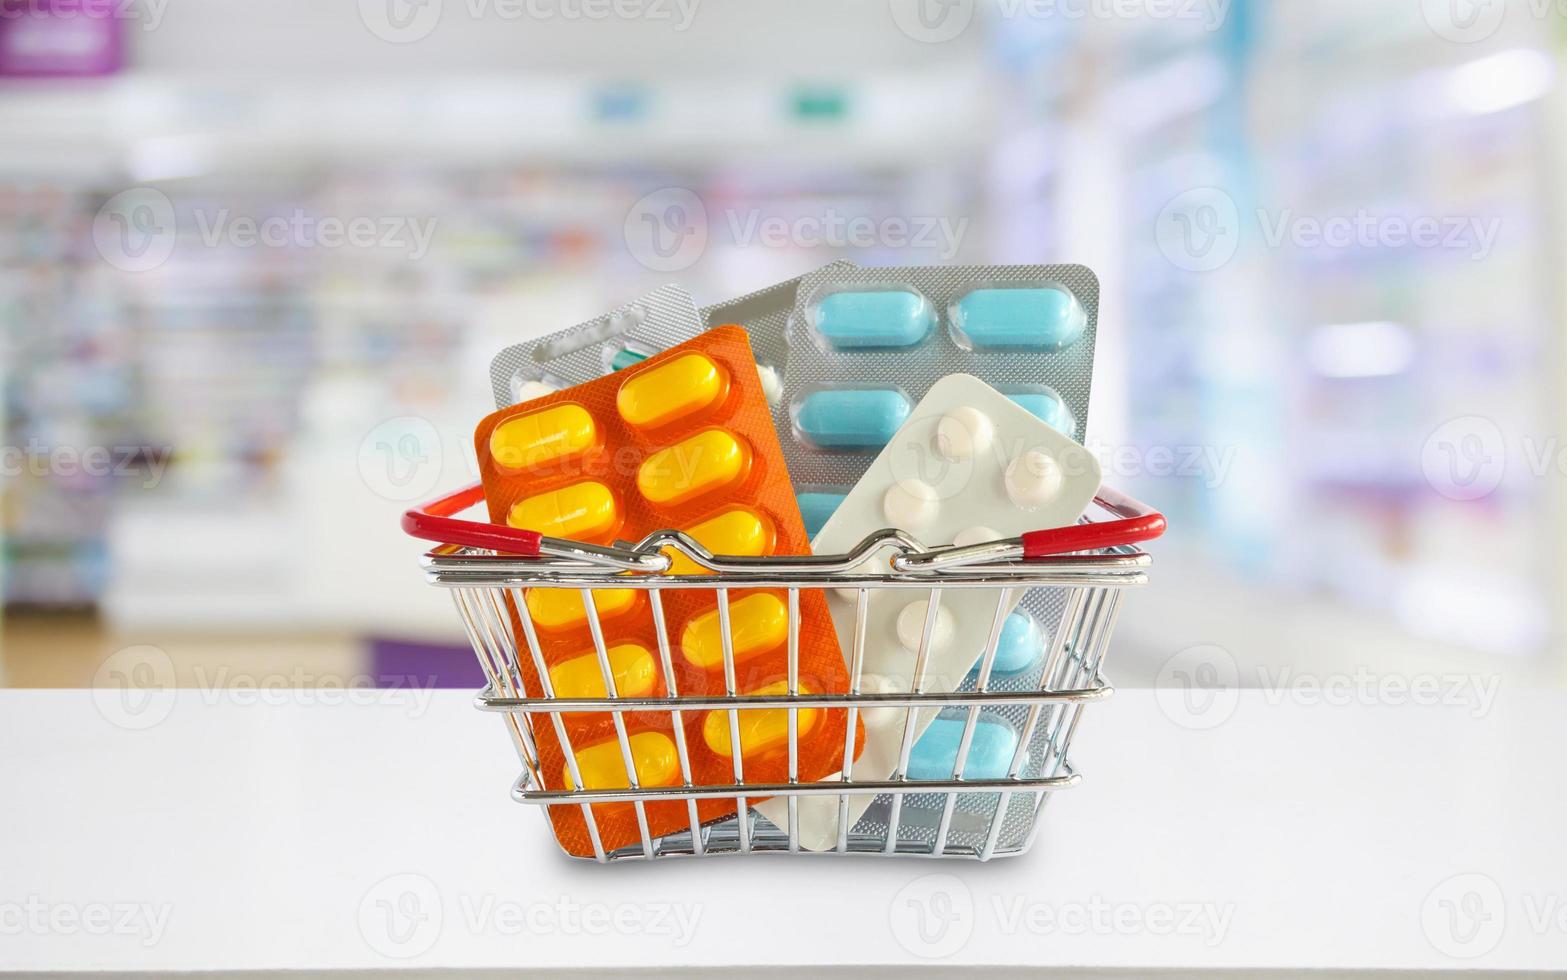 Medizinpillenpaket im Einkaufskorb mit Apotheken-Drogerieregalen verwischen den Hintergrund foto